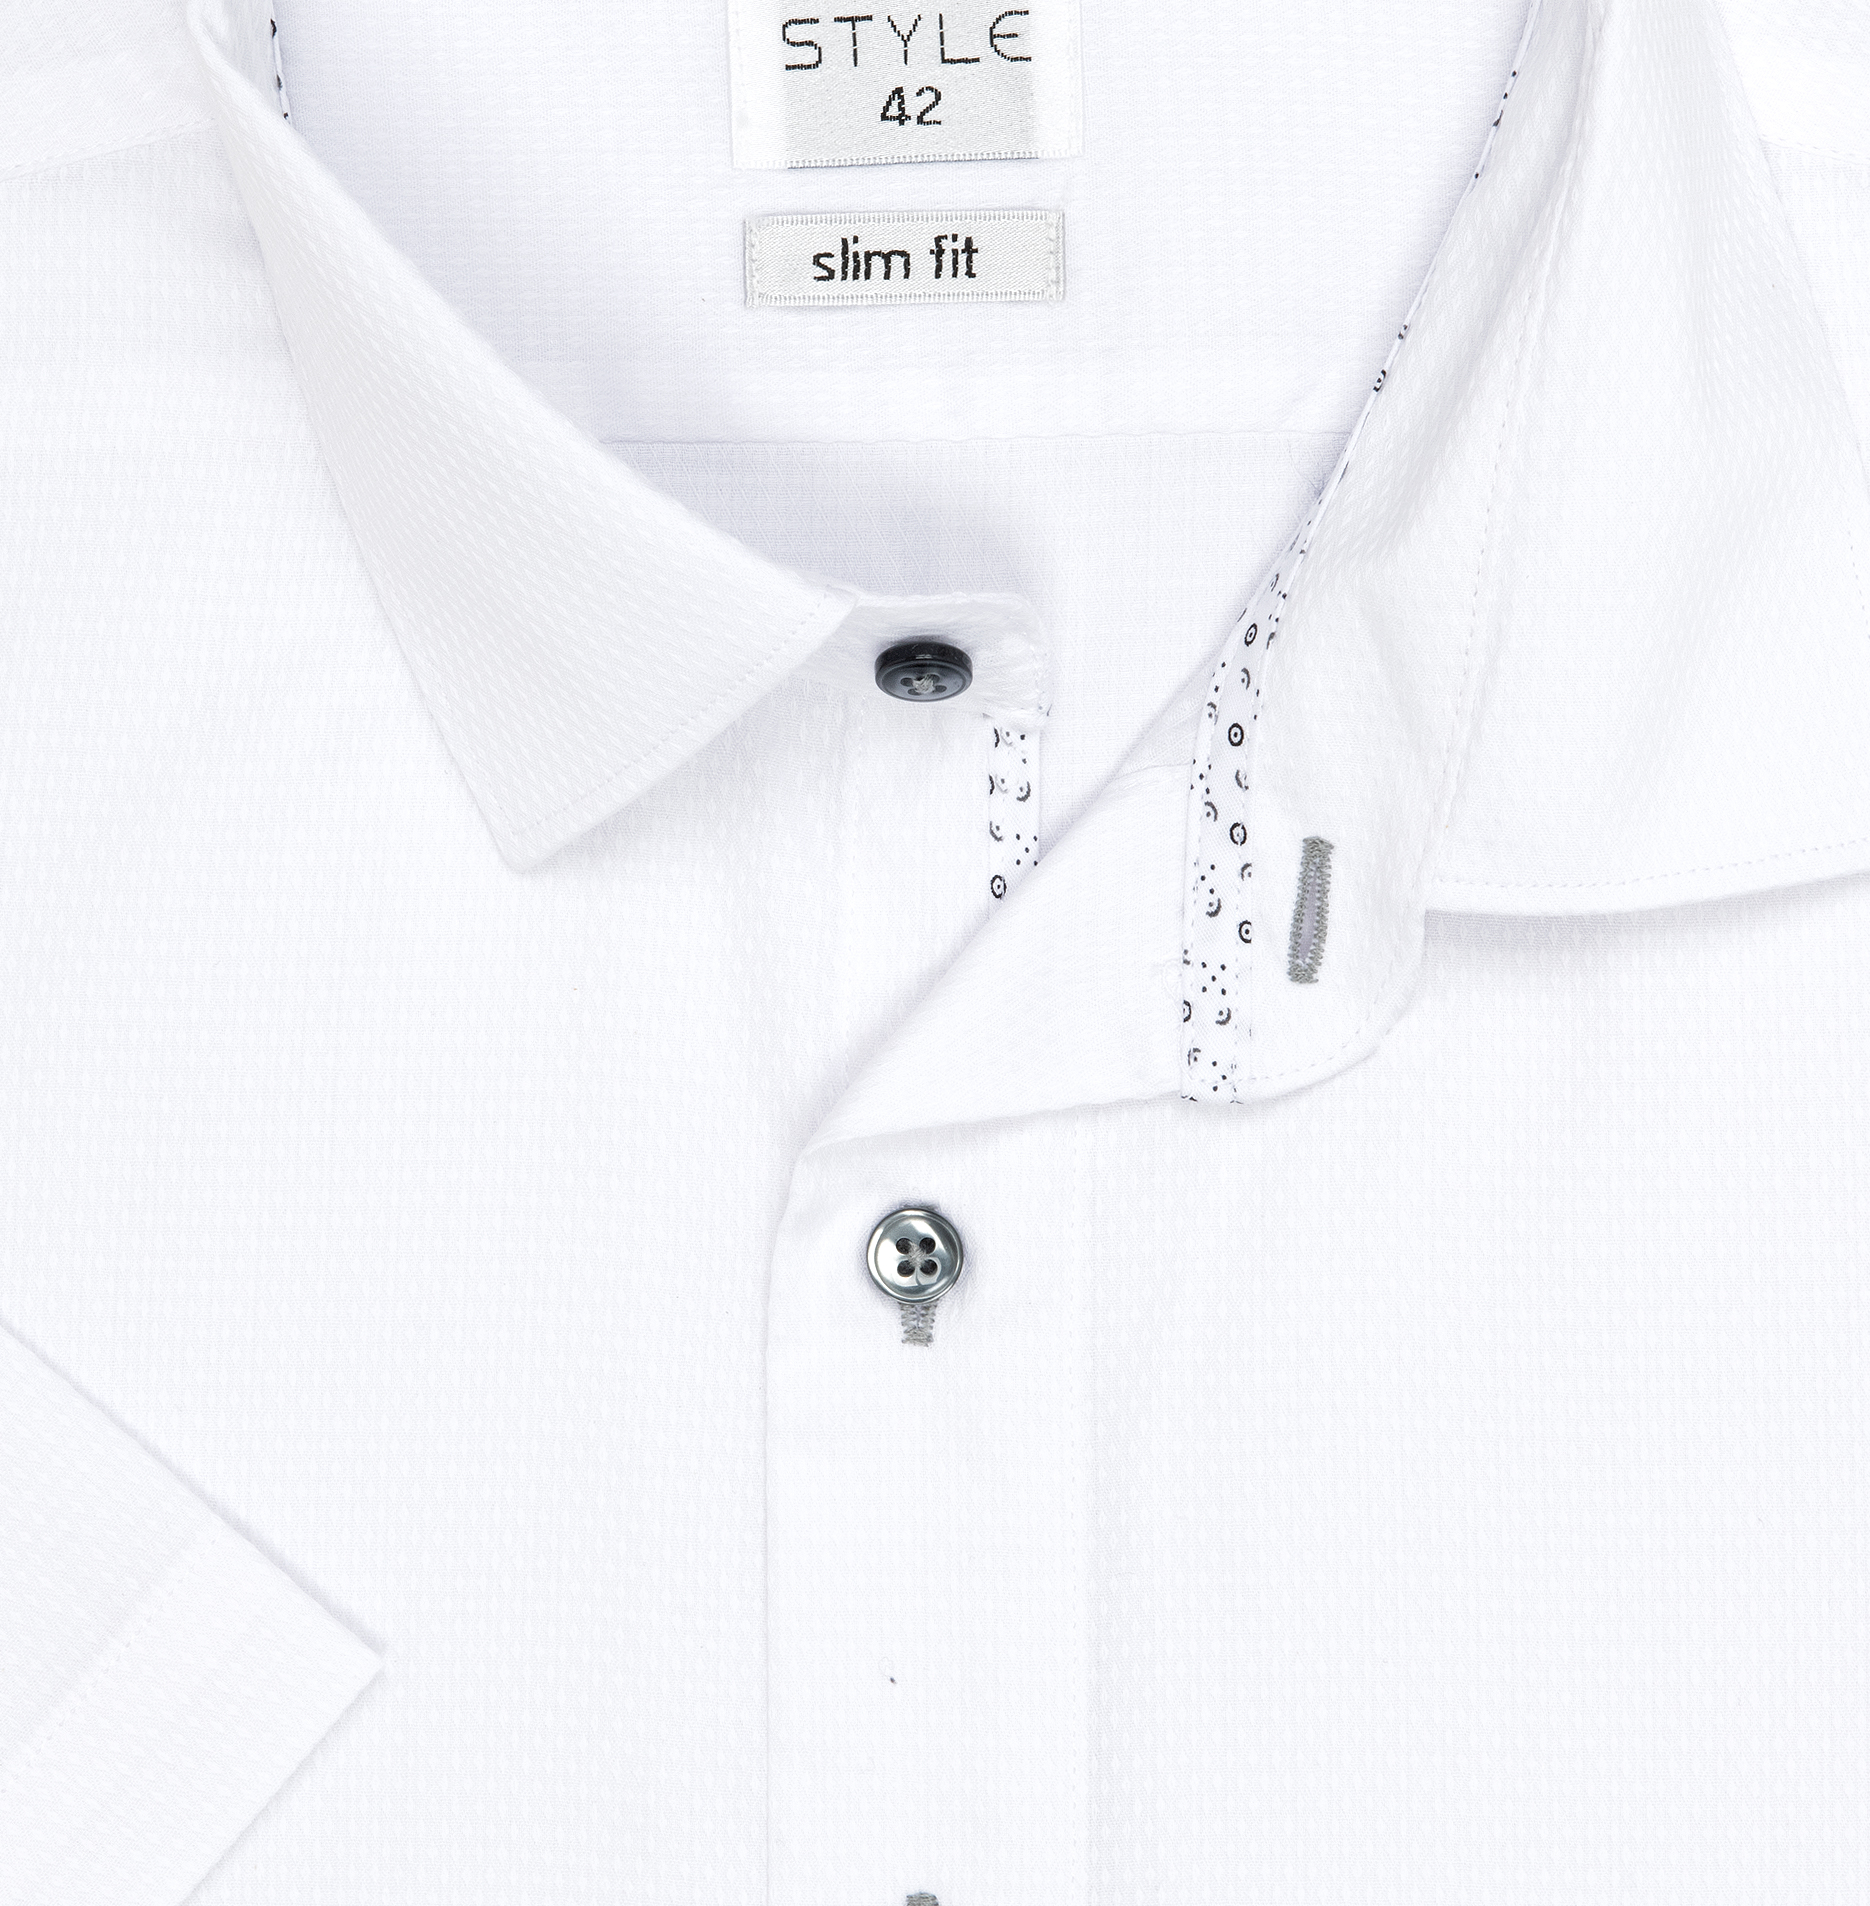 Pánská košile krátký rukáv AMJ VKSR 838/11 Slim Fit Style Velikost: 40